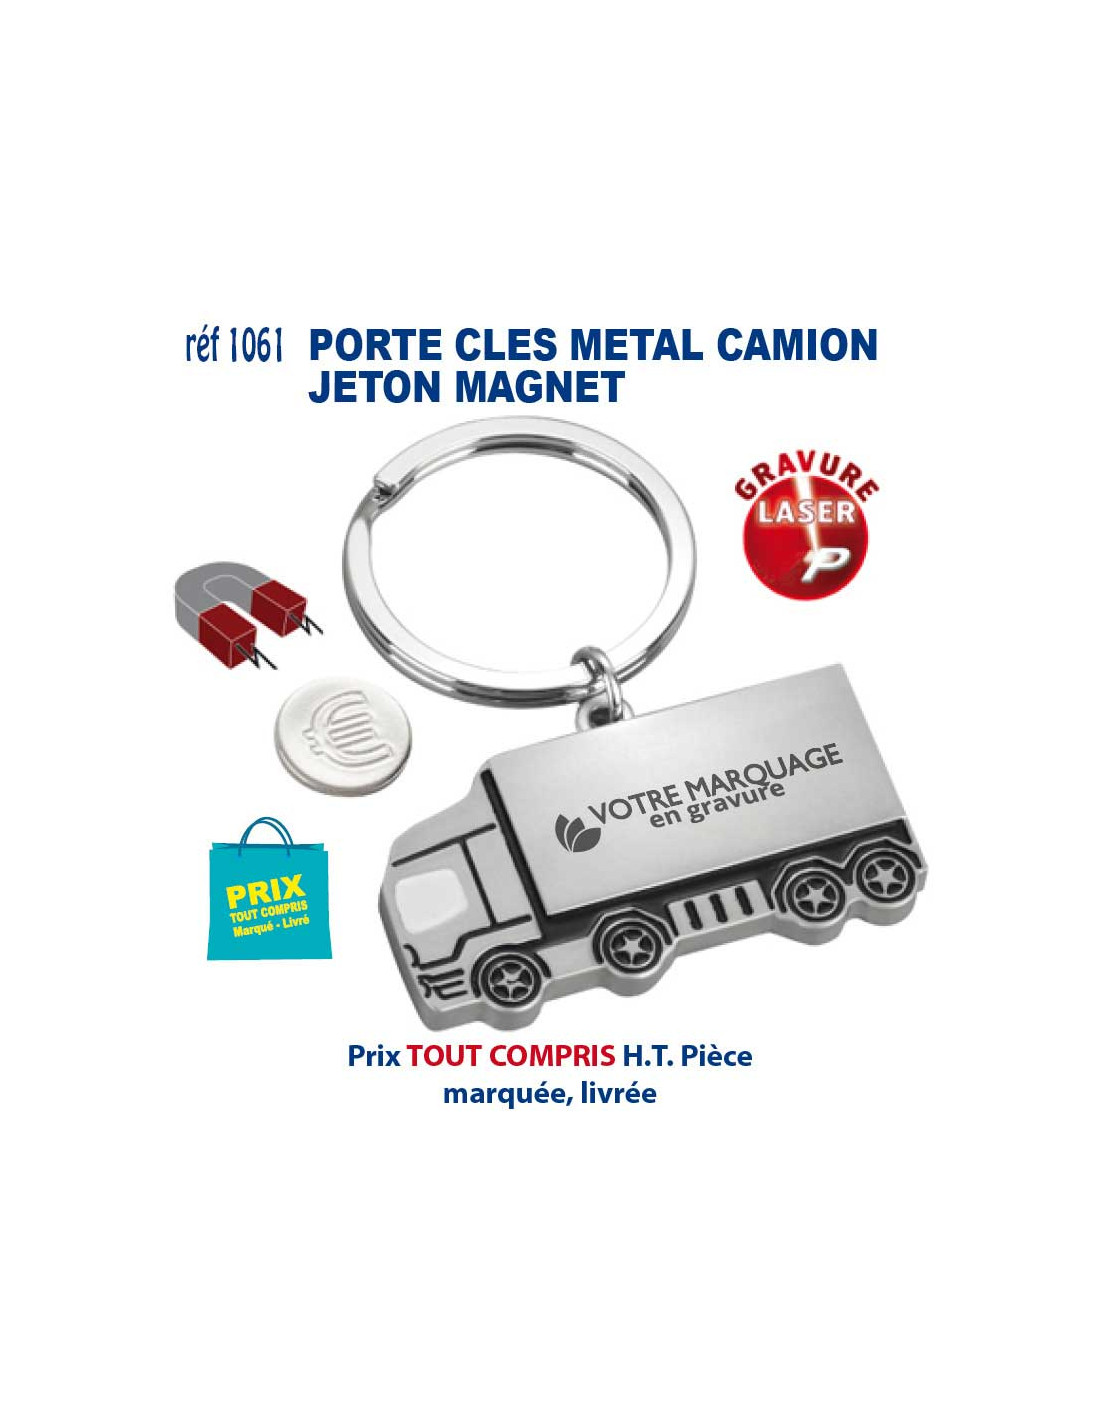 PORTE CLES METAL JETON MAGNET REF 1061 CADEAU PUBLICITAIRE